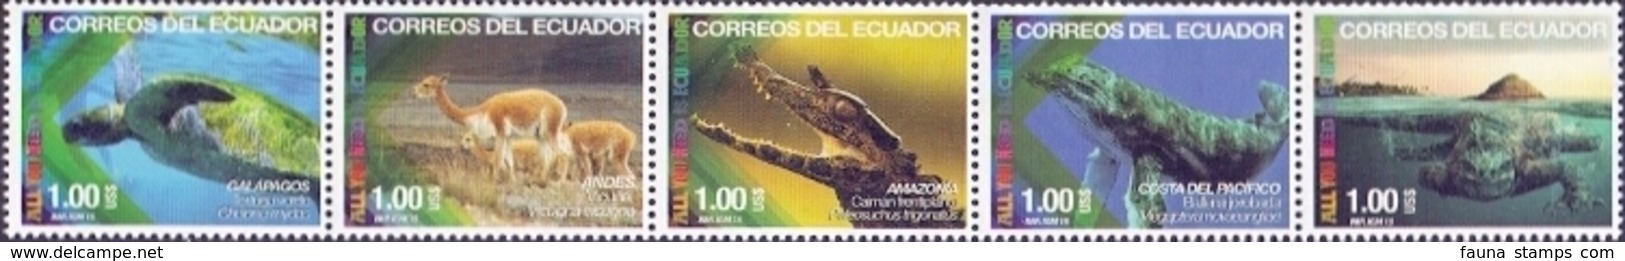 Ecuador - Fauna Of Ecuador, Set Of 5 Stamps, MNH, 2015 - Turtles